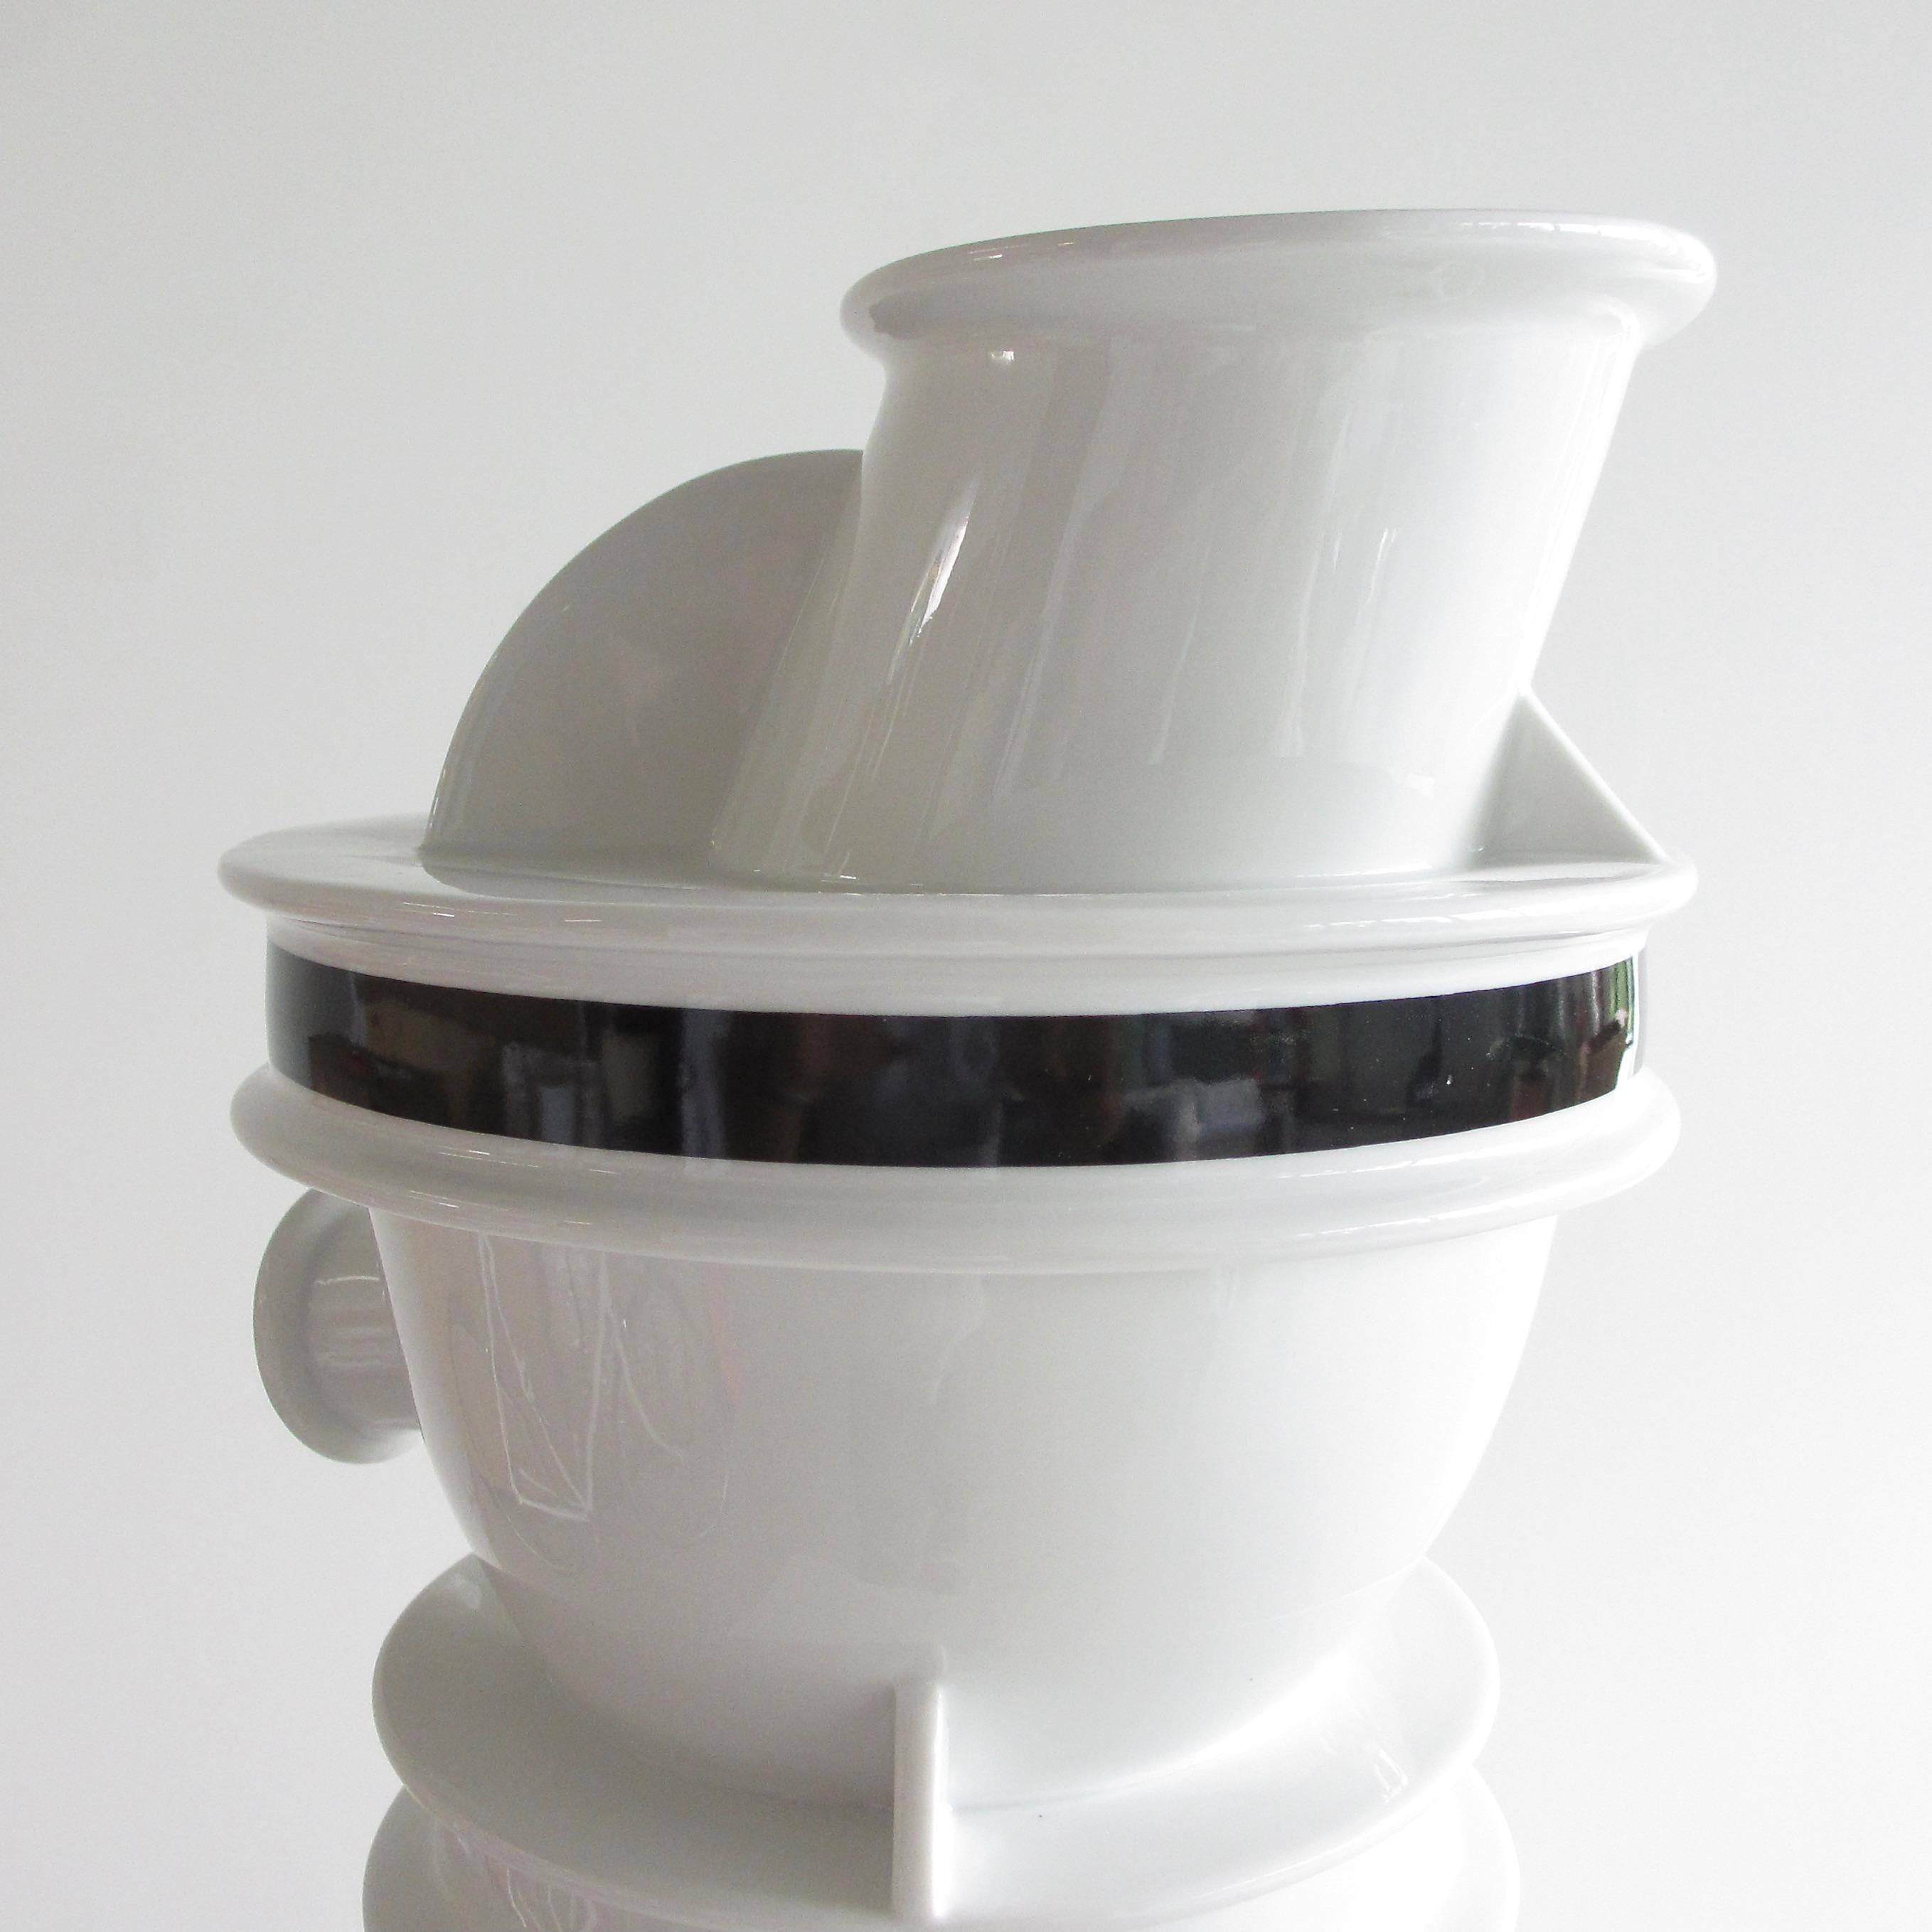 Vase en céramique, par Ettore Sottsass, 1983.

Le vase Euphrate, fabriqué en porcelaine céramique. Il fait partie de la série Rivers, conçue par Sottsass de 1981 à 1988.

Estampillé en dessous.

Ettore Sottsass (14 septembre 1917 - 31 décembre